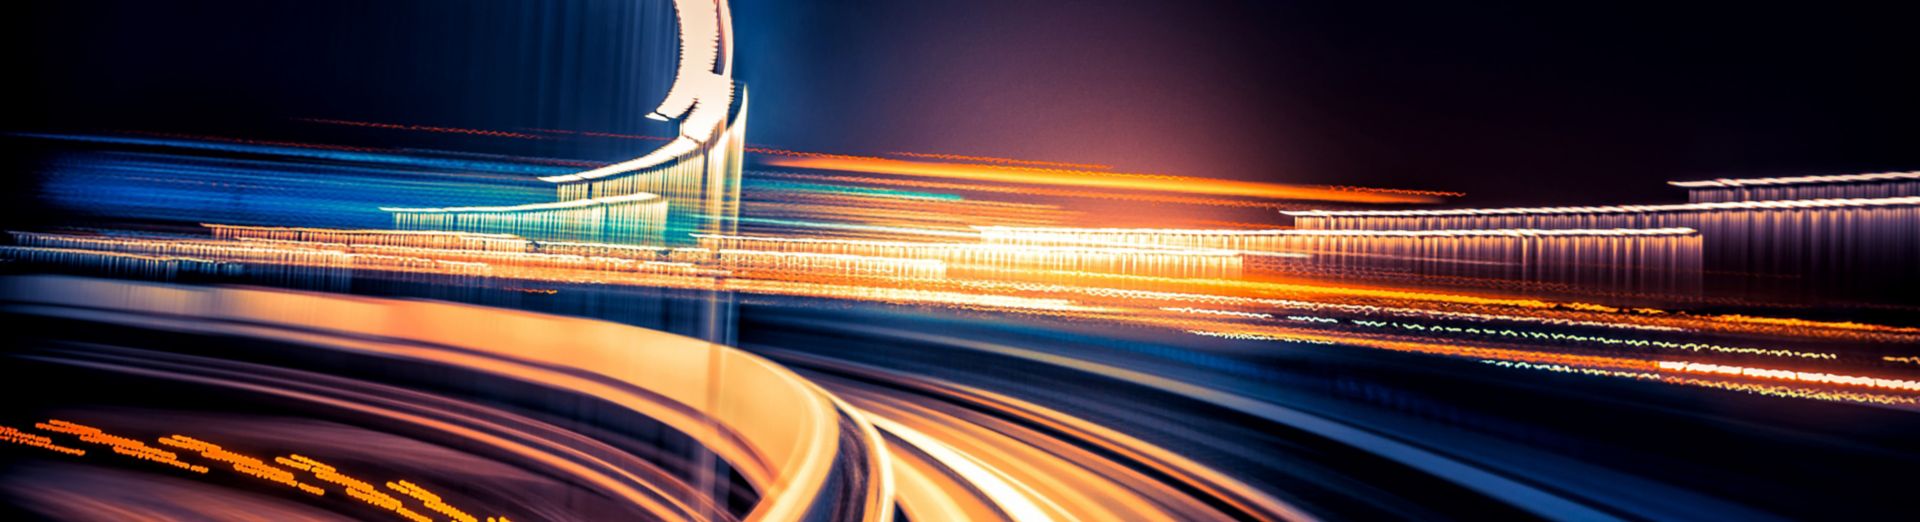 Сеть соединенных автомагистралей, символизирующая SAP Business Network